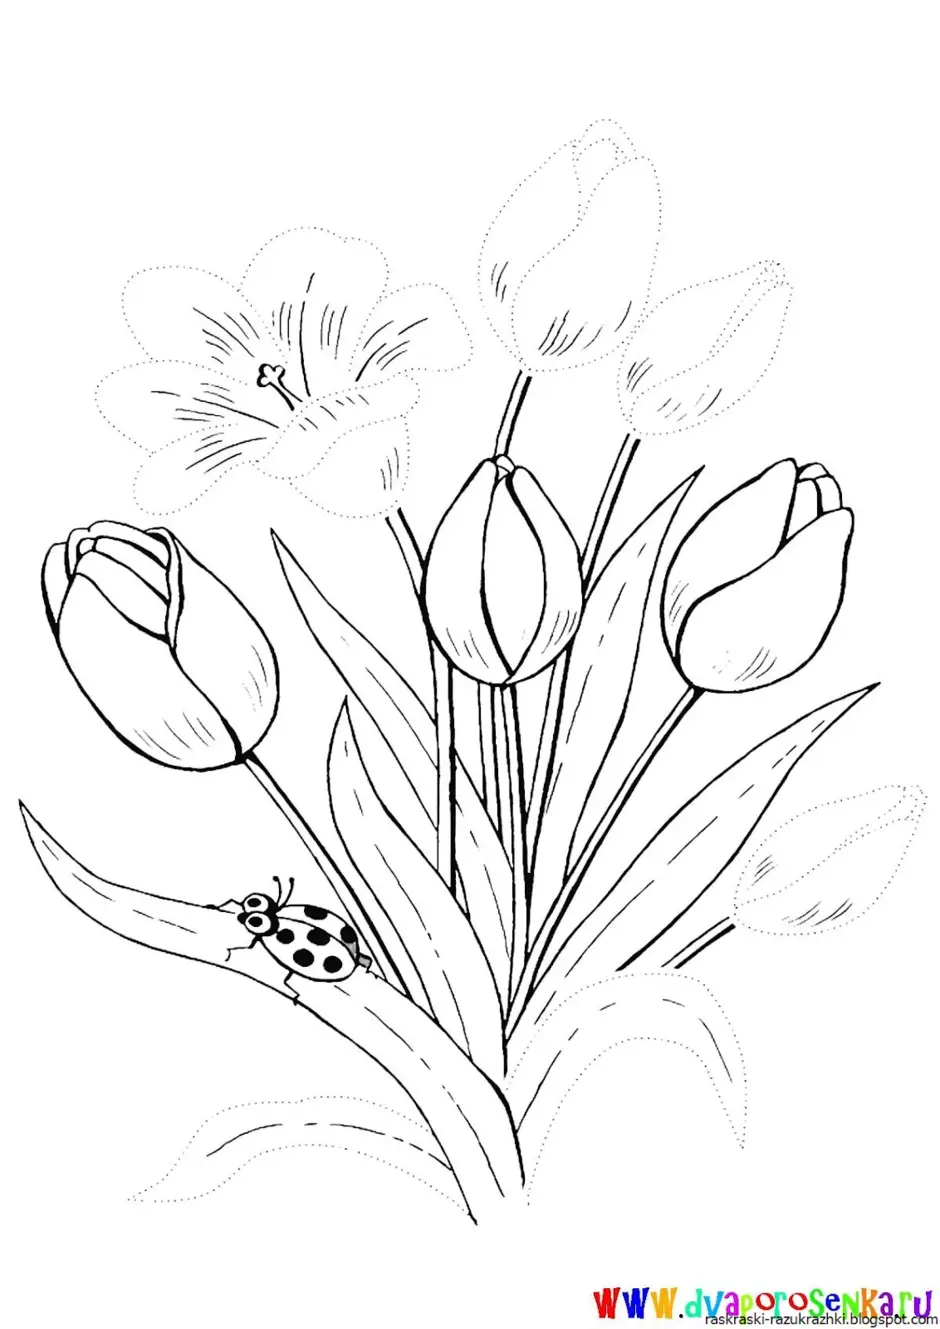 Как нарисовать весенние цветы. Тюльпан Шренка раскраска. Весенние цветы раскраска. Тюльпан раскраска. Весенние цветы раскраска для детей.